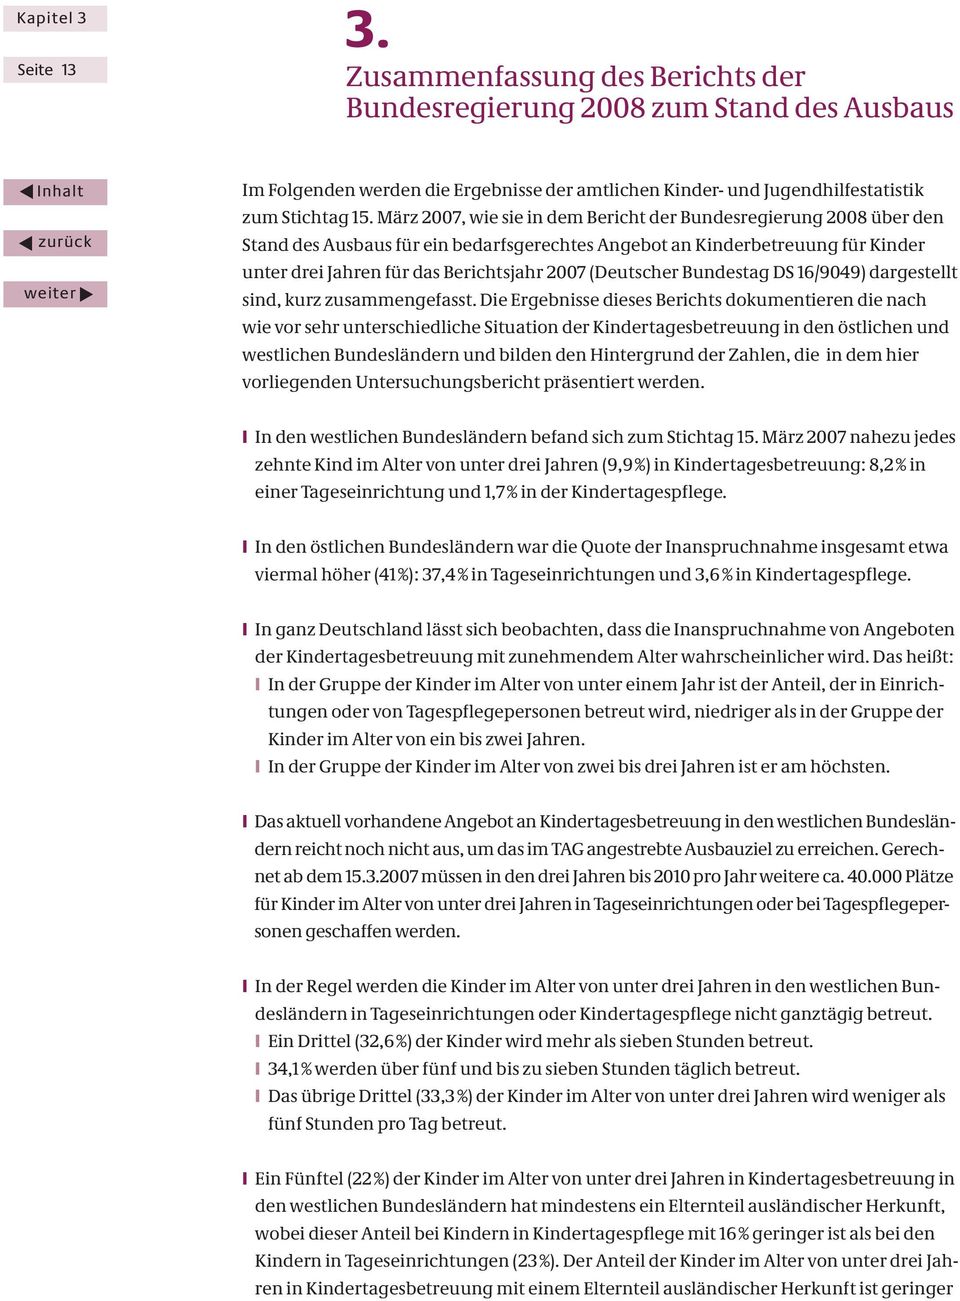 (Deutscher Bundestag DS 16/9049) dargestellt sind, kurz zusammengefasst.